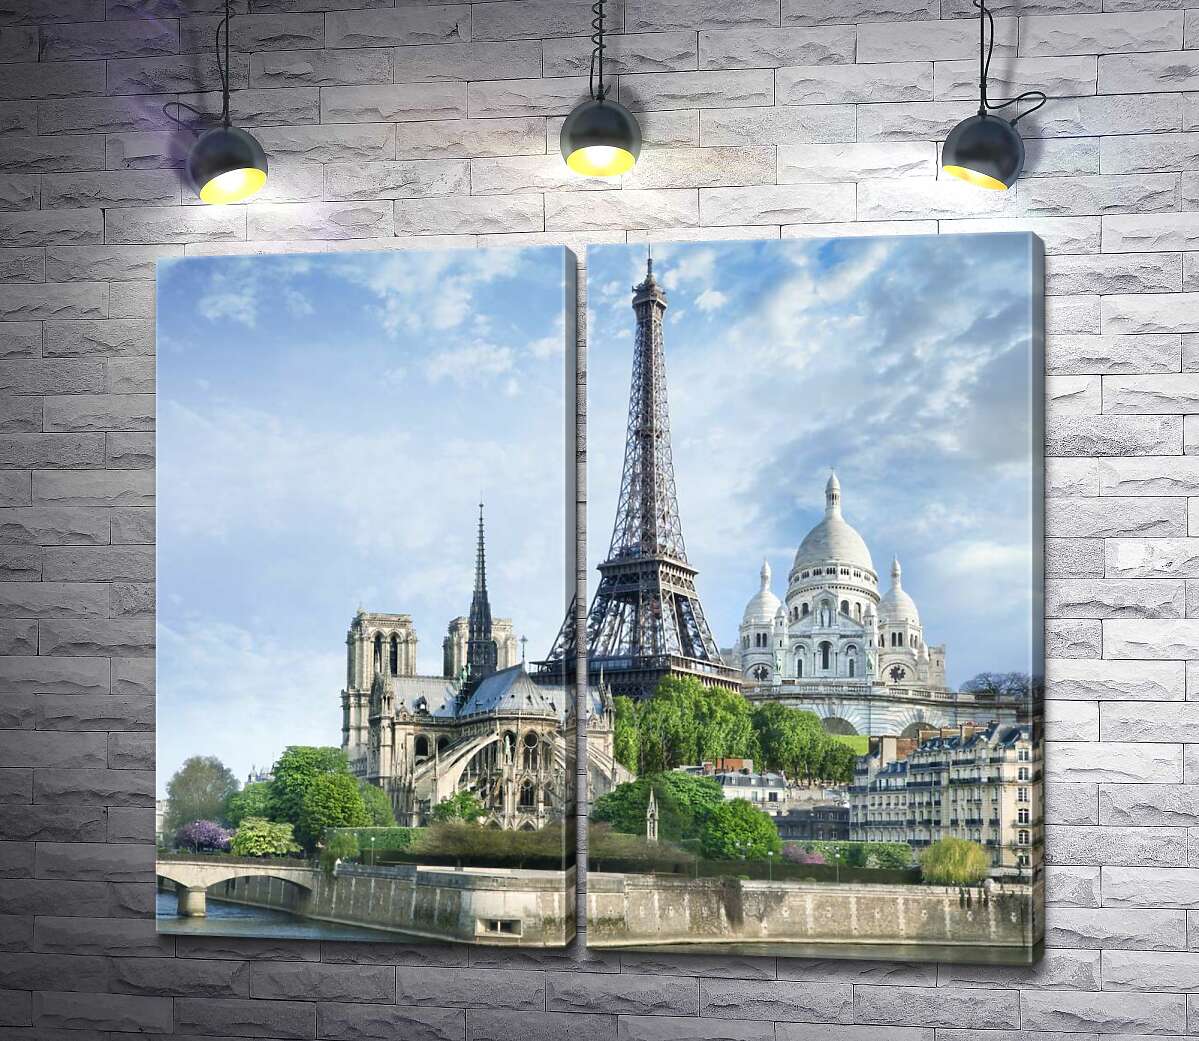 модульная картина Архитектурные произведения Парижа: Эйфелева башня (Eiffel tower), Нотр-Дам-де-Пари (Notre Dame de Paris), базилика Сакре-Кер (Basilique du Sacre Cœur)